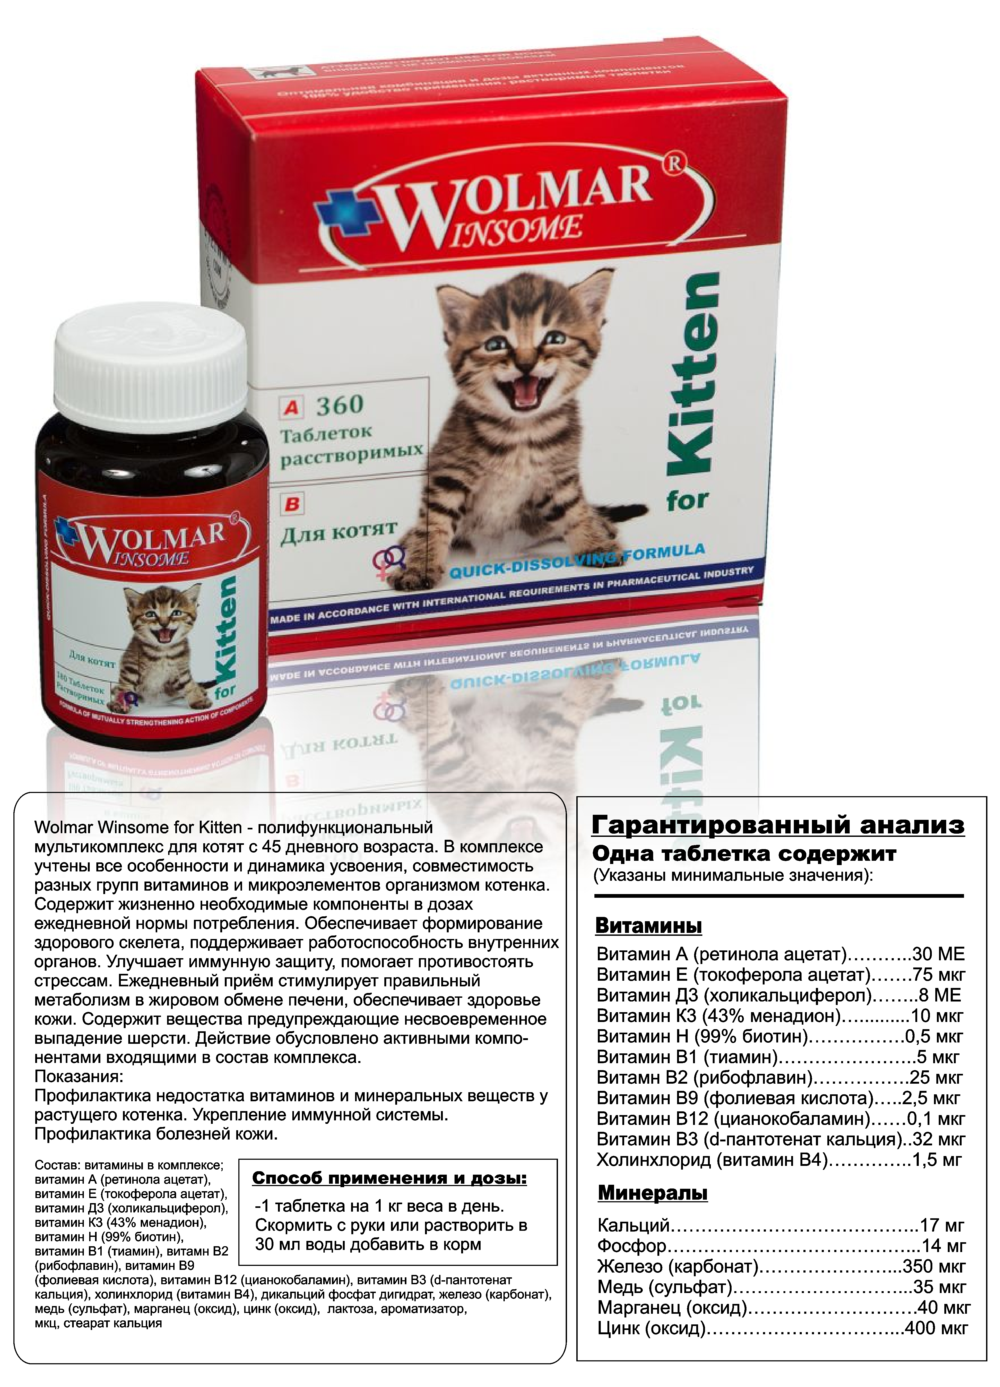 Вирусная пневмония котят